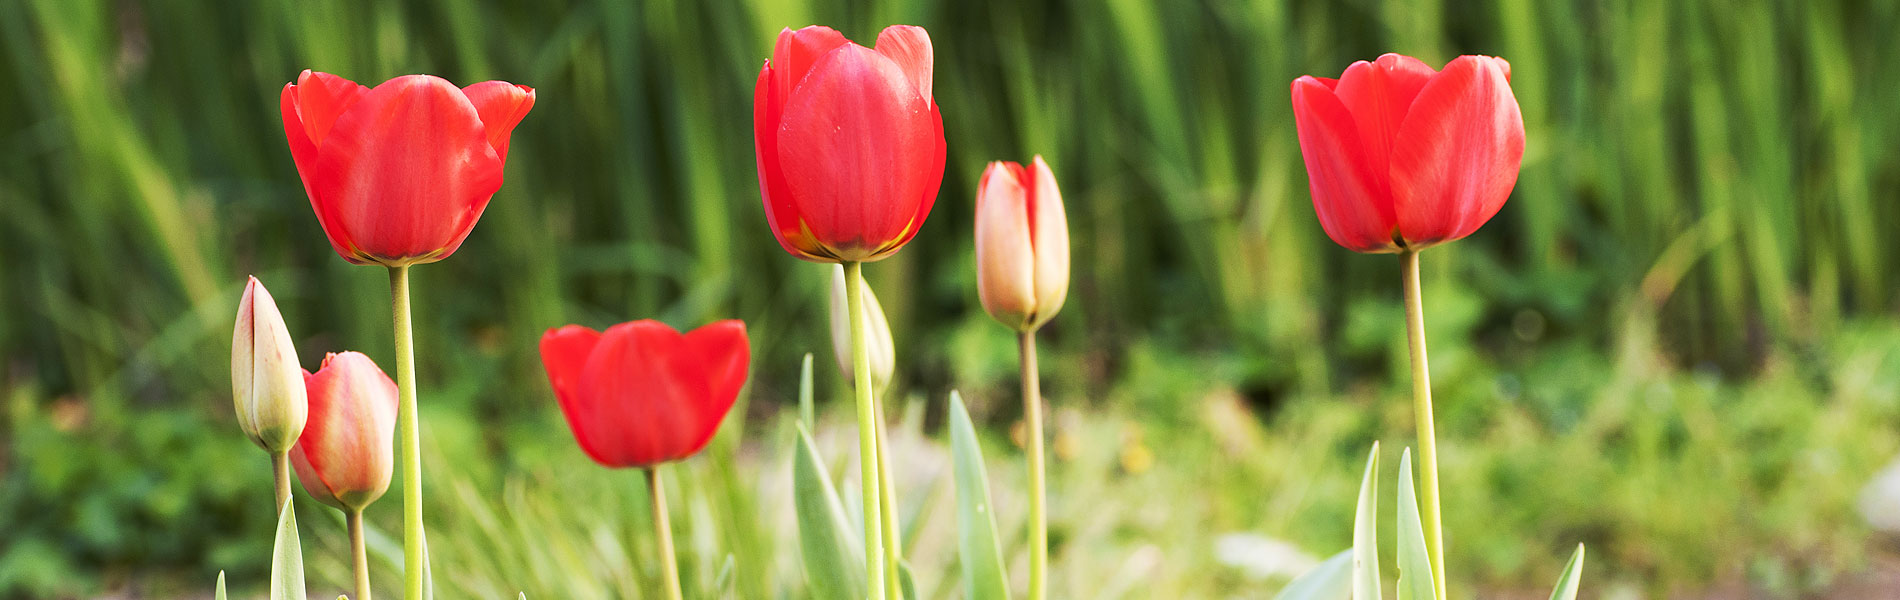 Fiori di tulipano